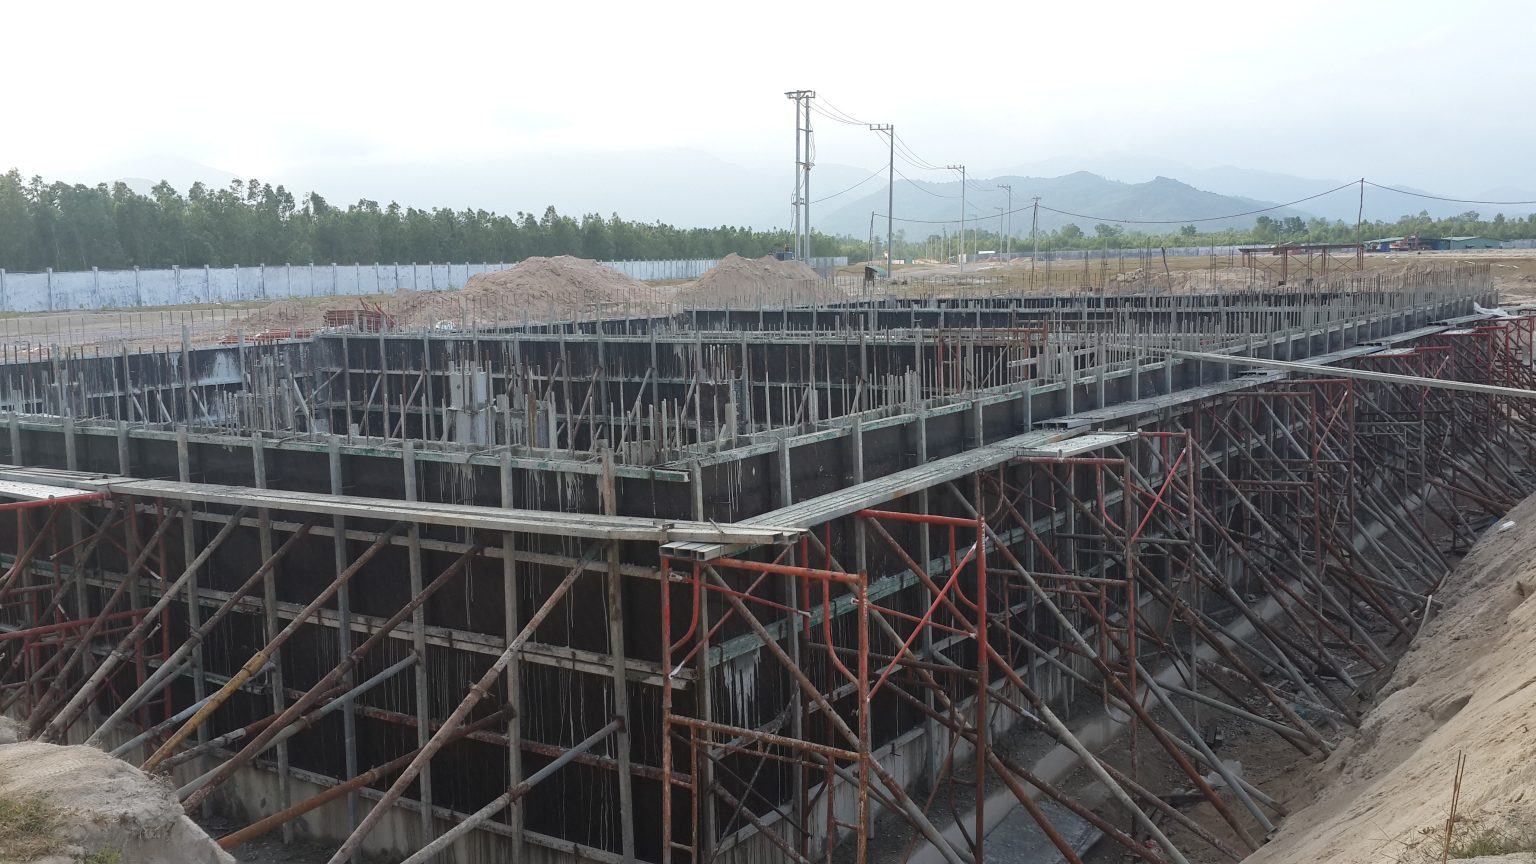 Tìm hiểu quy trình thiết kế dầm sàn nhà xưởng công nghiệp Thiet-ke-dam-san-nha-xuong-3-1536x864